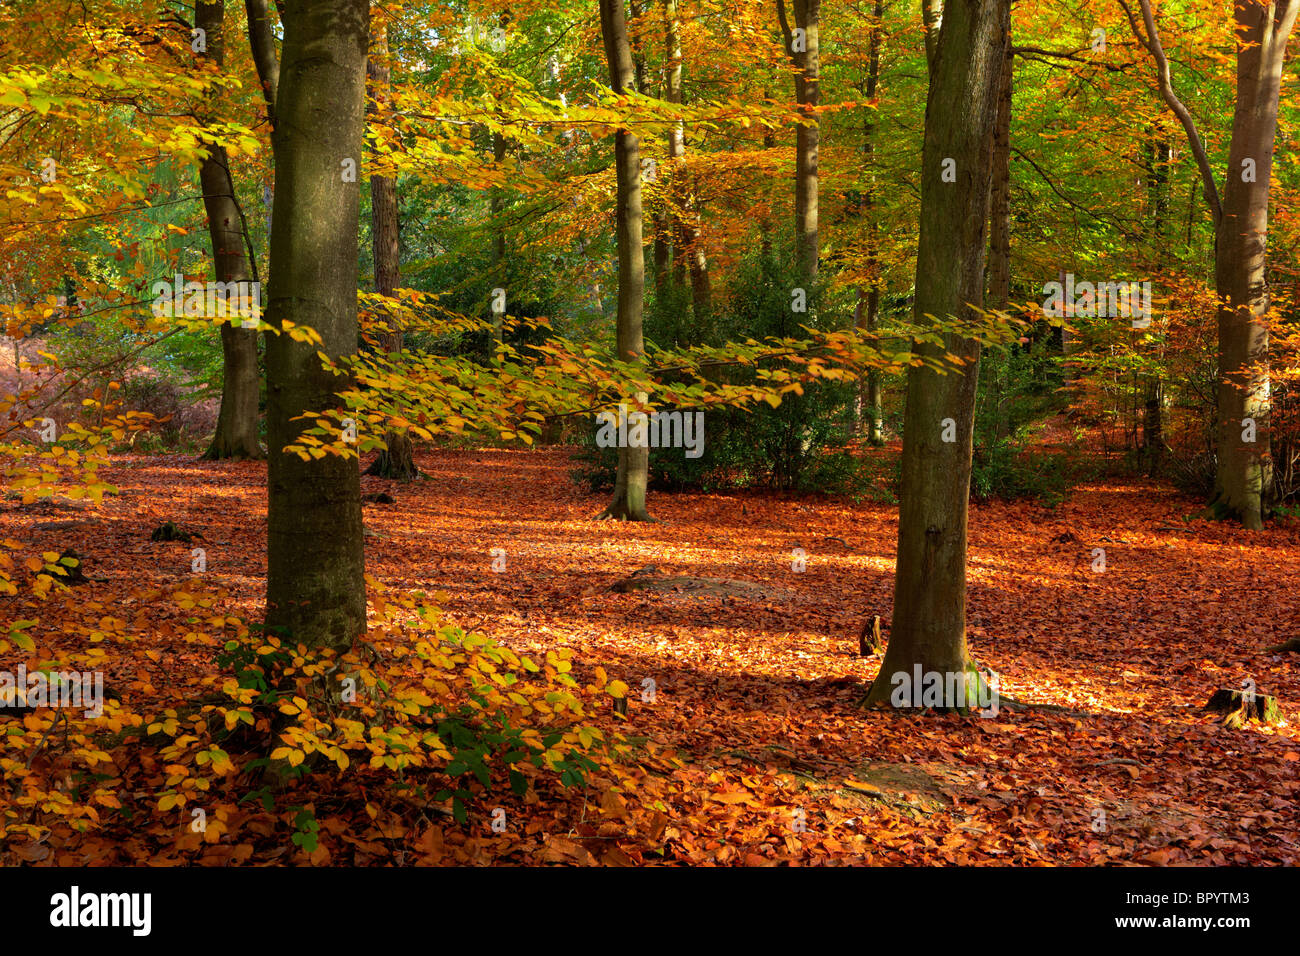 English woodland during Autumn Stock Photo